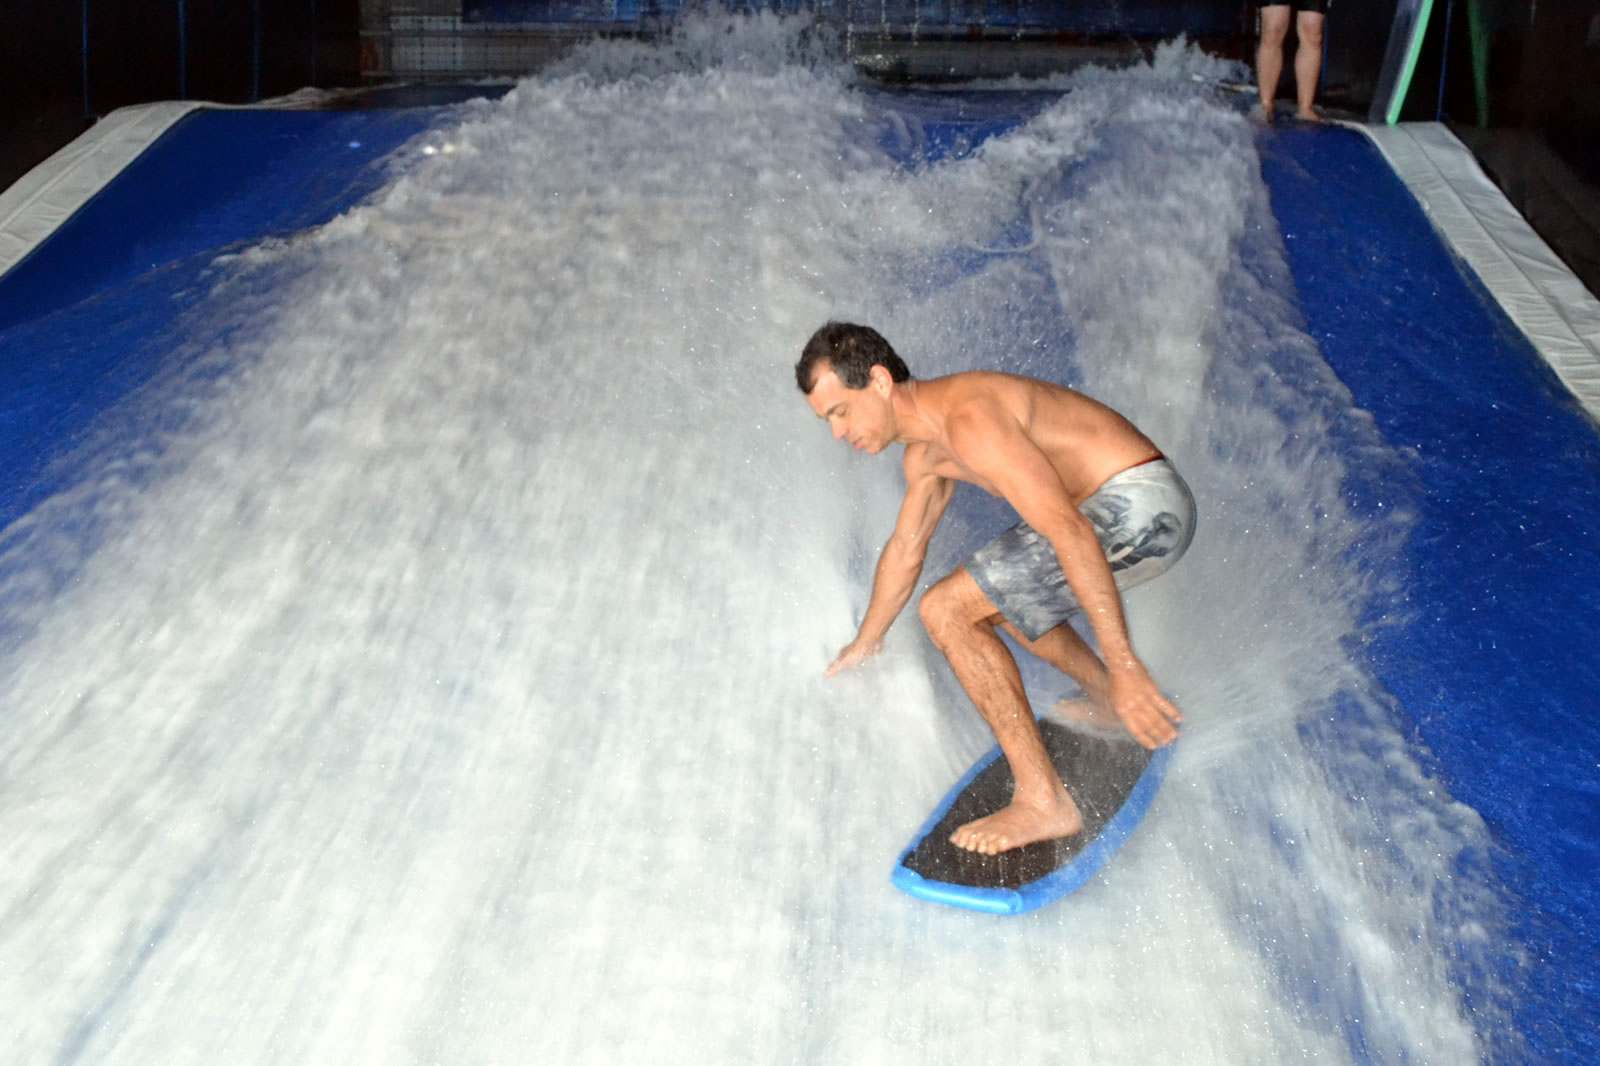 surfhouse - Que tal surfar aqui mesmo em São Paulo?